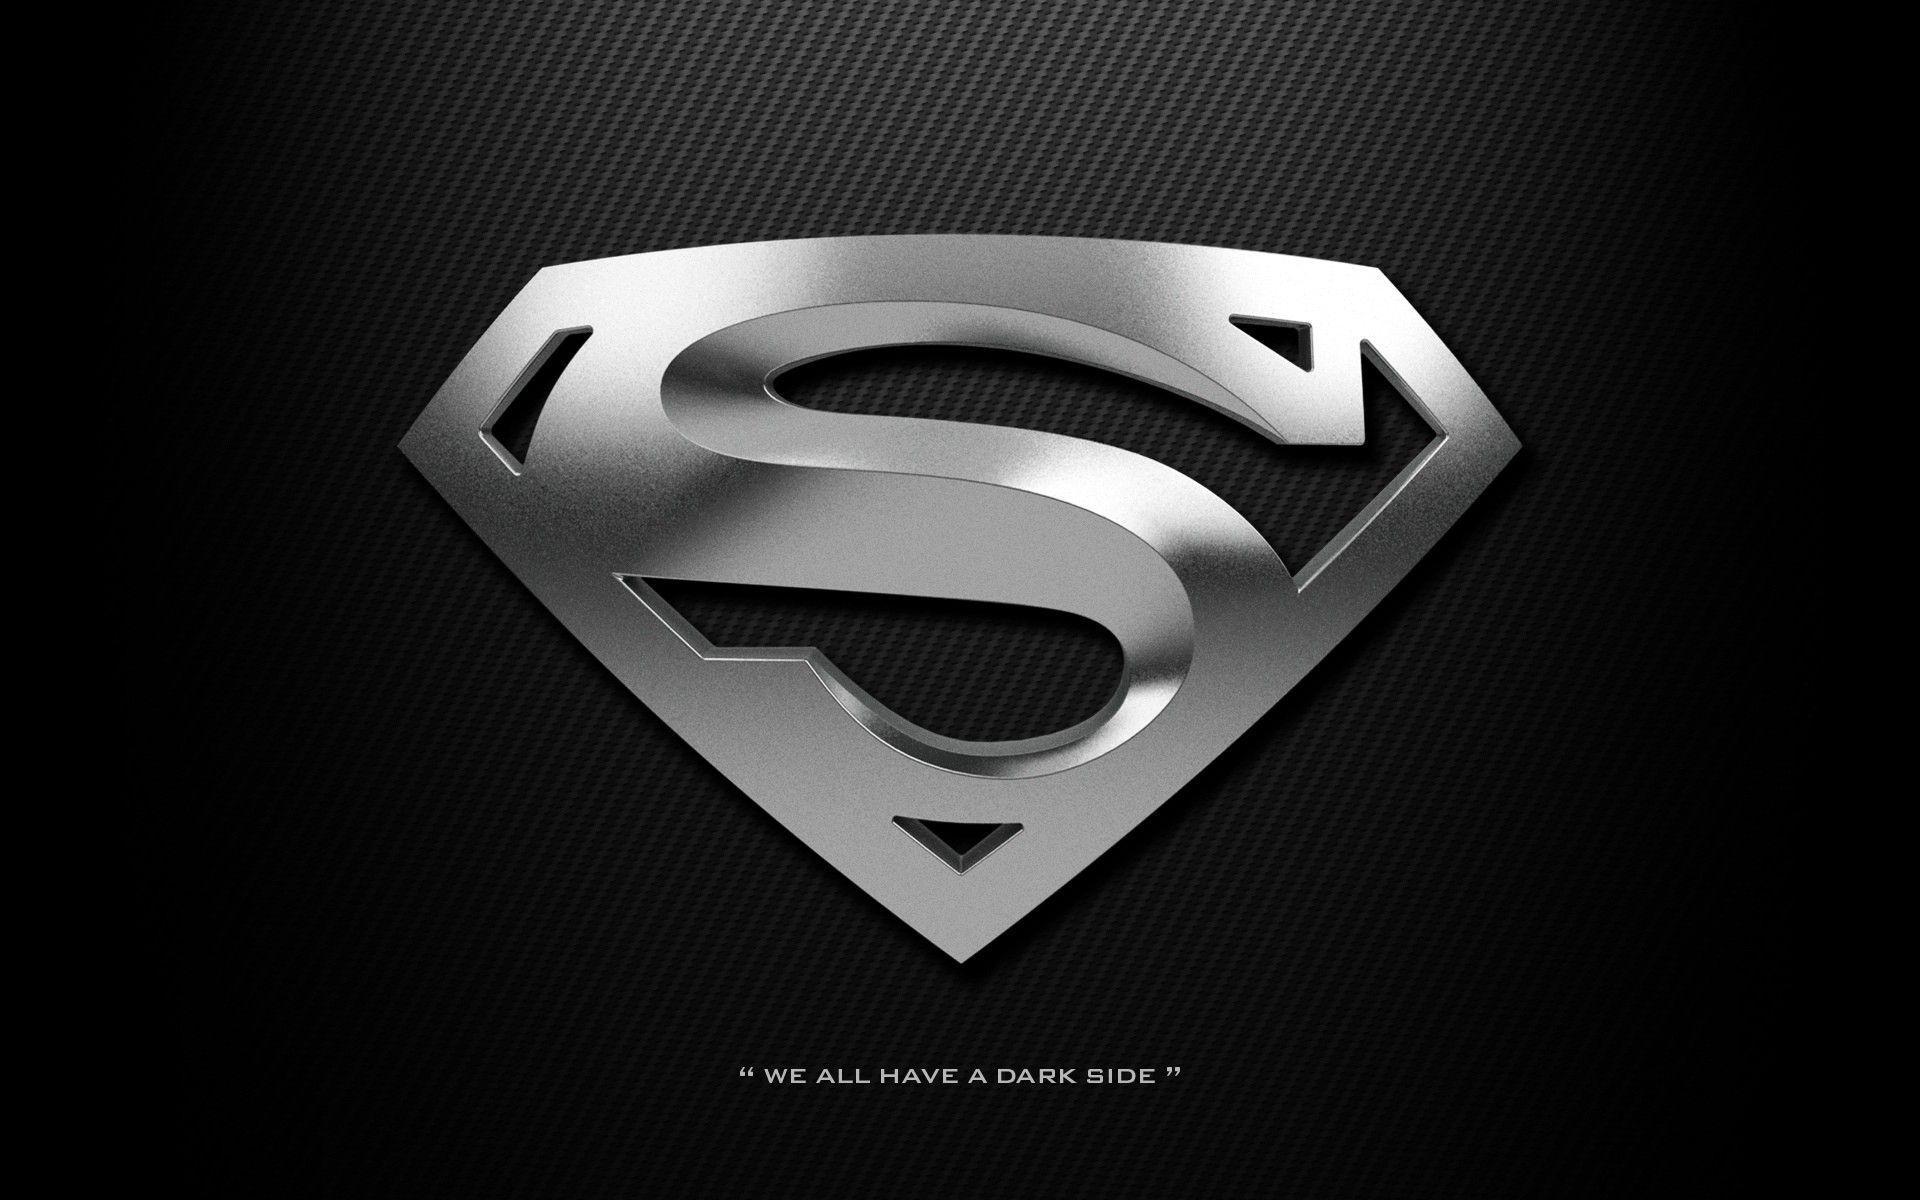 字母superman壁纸图片,superman潮图壁纸 - 伤感说说吧